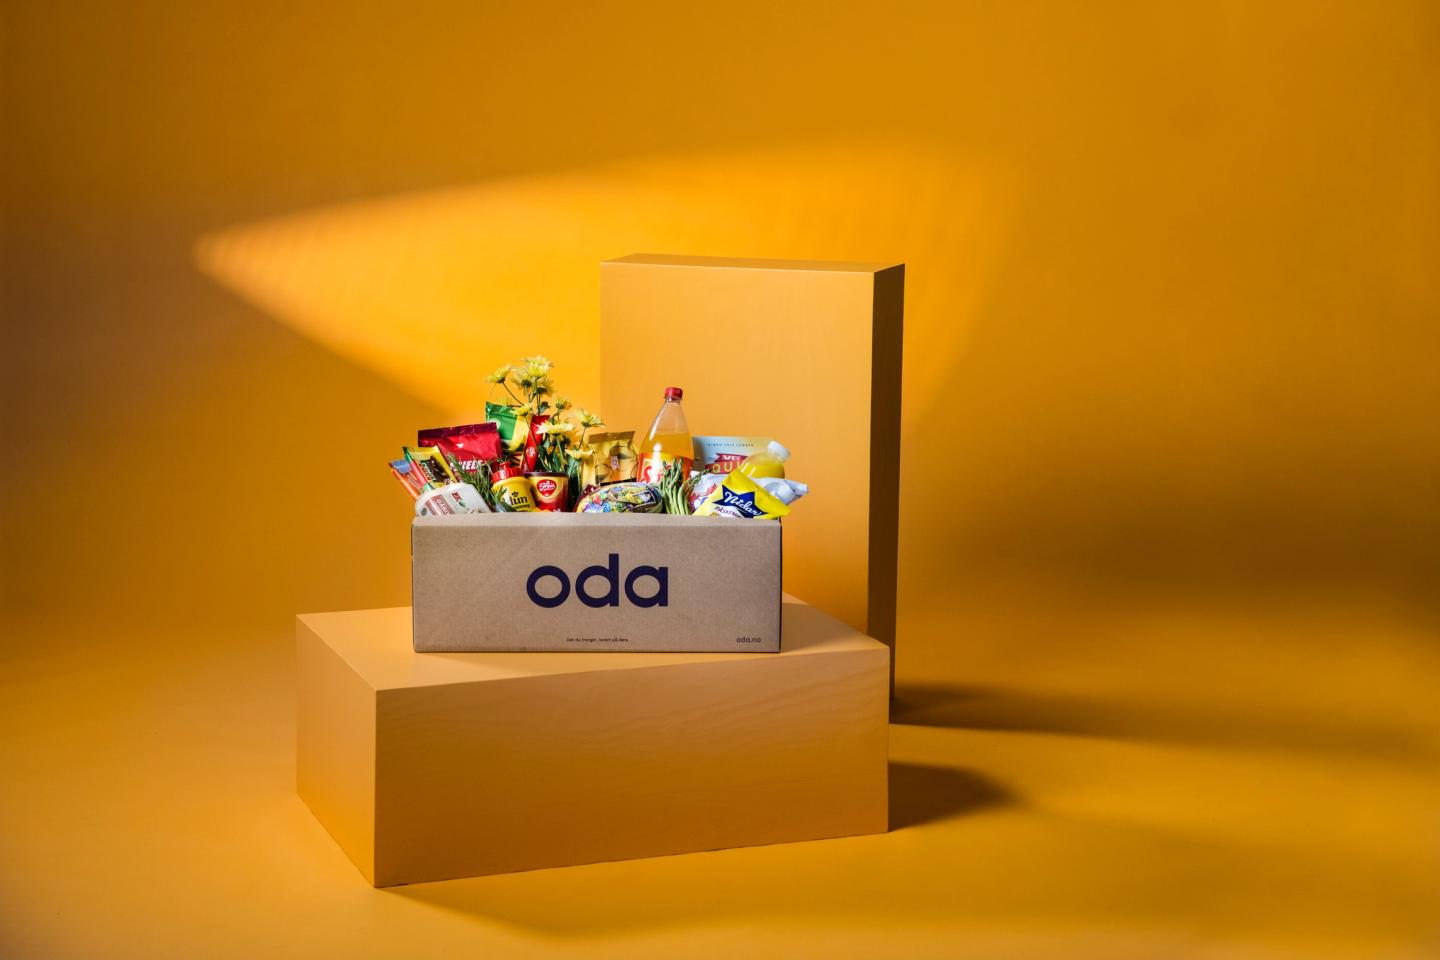 Bildet viser en full pappeske med matvarer til påsken fra Oda.com